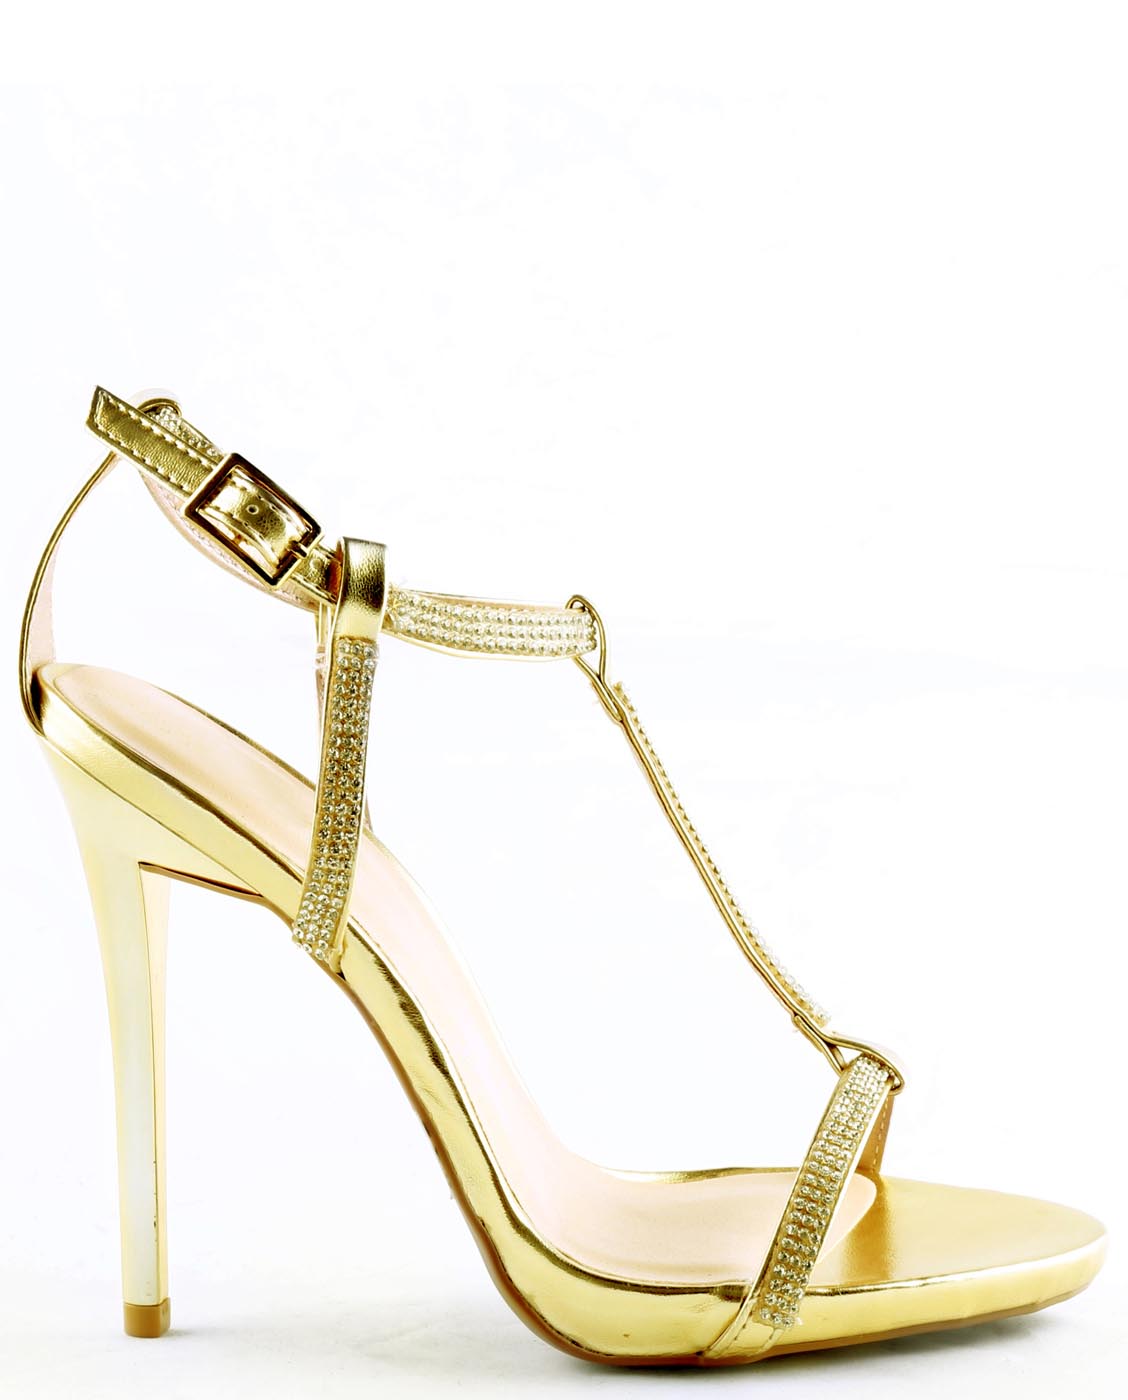 strappy embellished heels